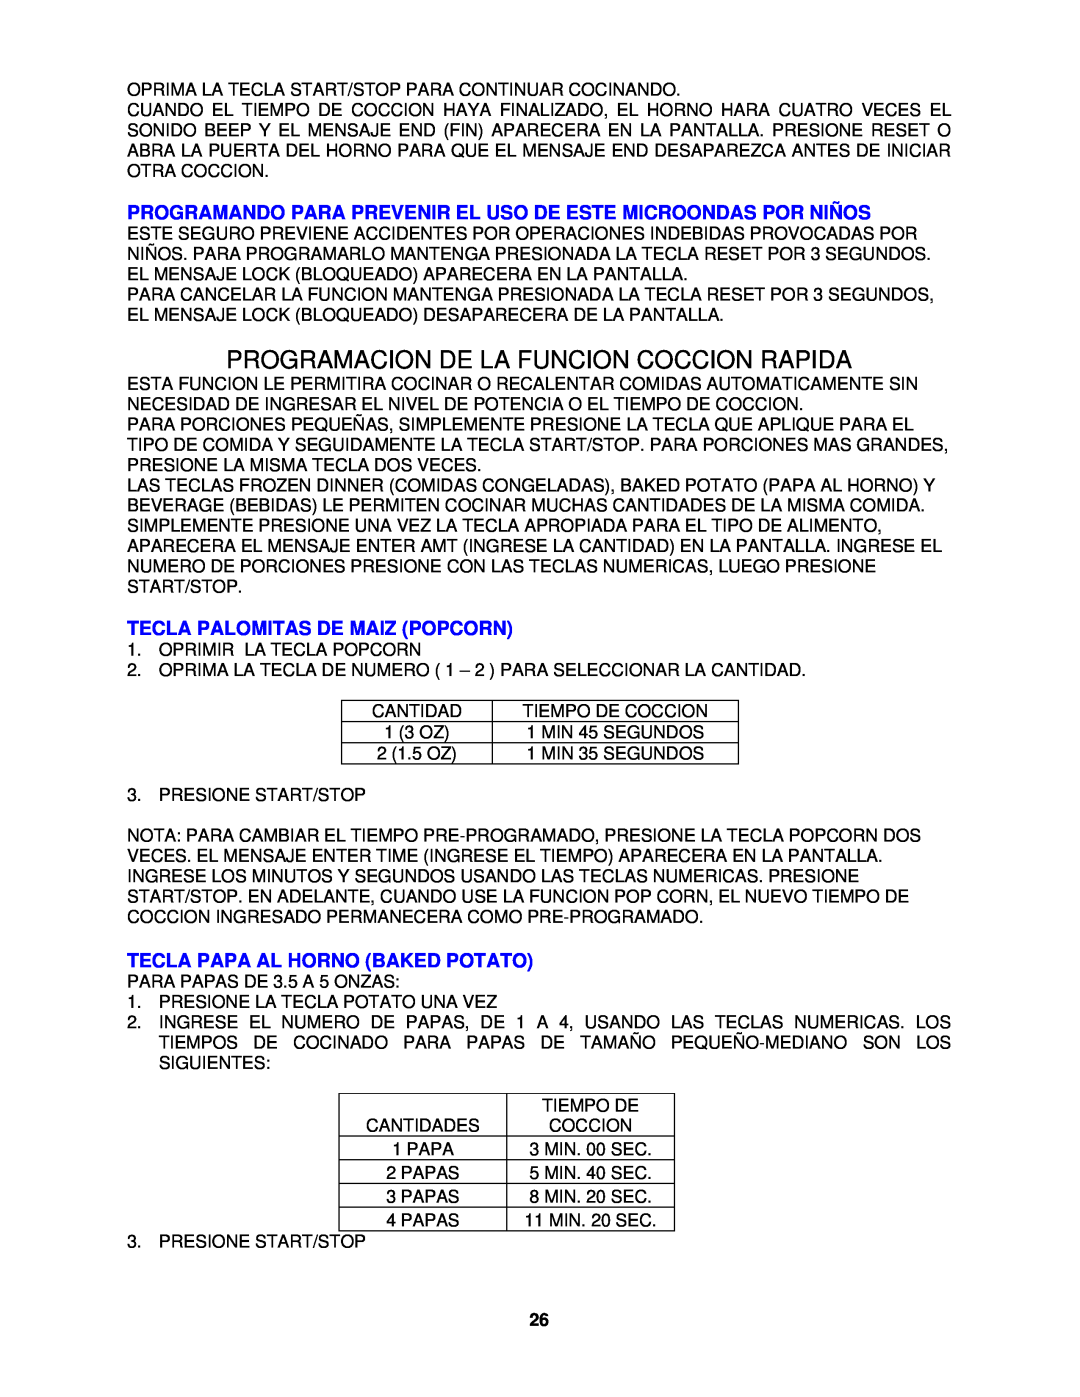 Avanti MO7191TW instruction manual Programacion De La Funcion Coccion Rapida, Tecla Palomitas De Maiz Popcorn 